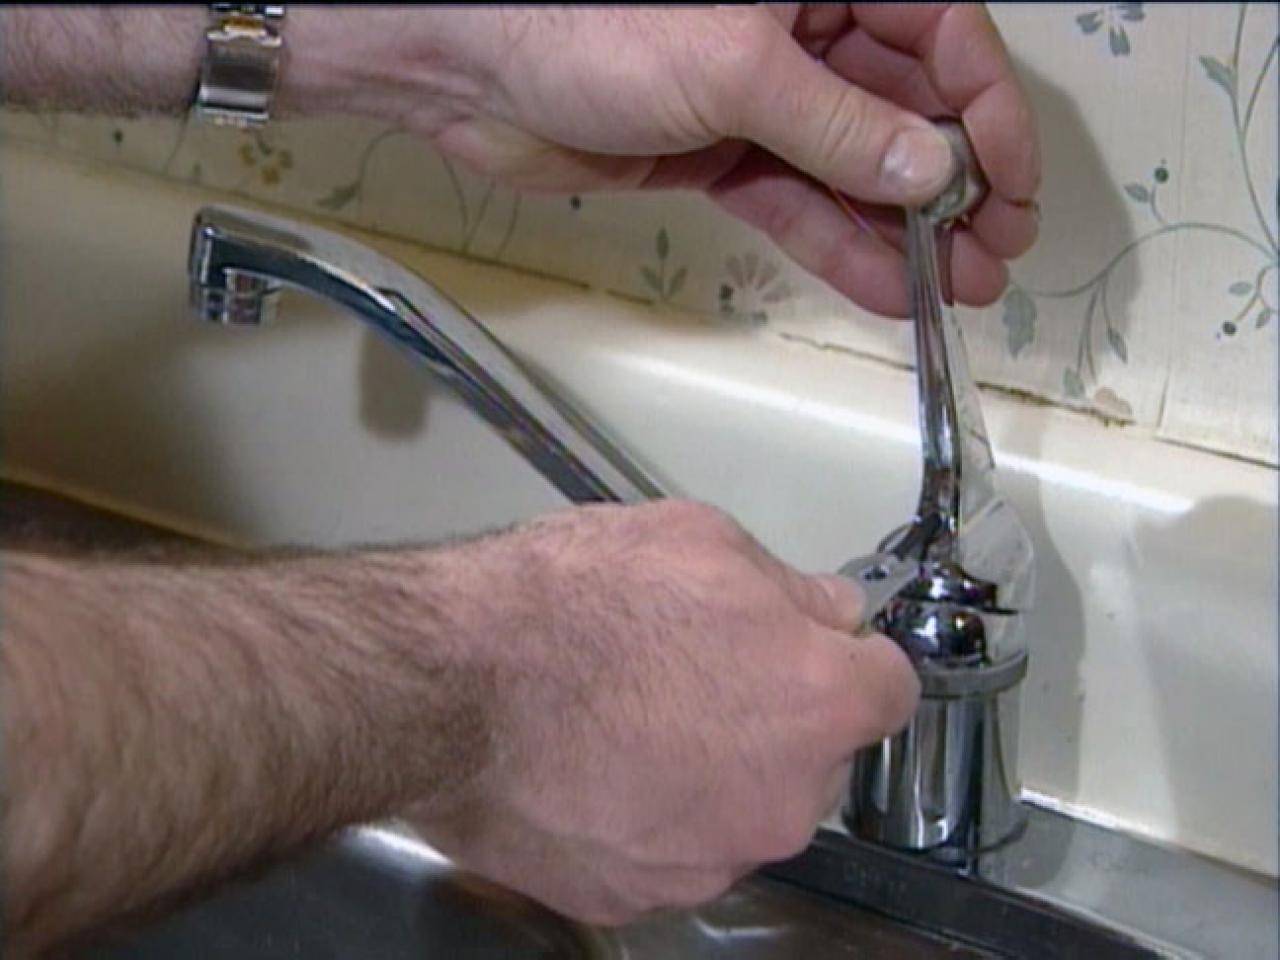 Как починить капающий кран в ванной, если протекает, устранить течь